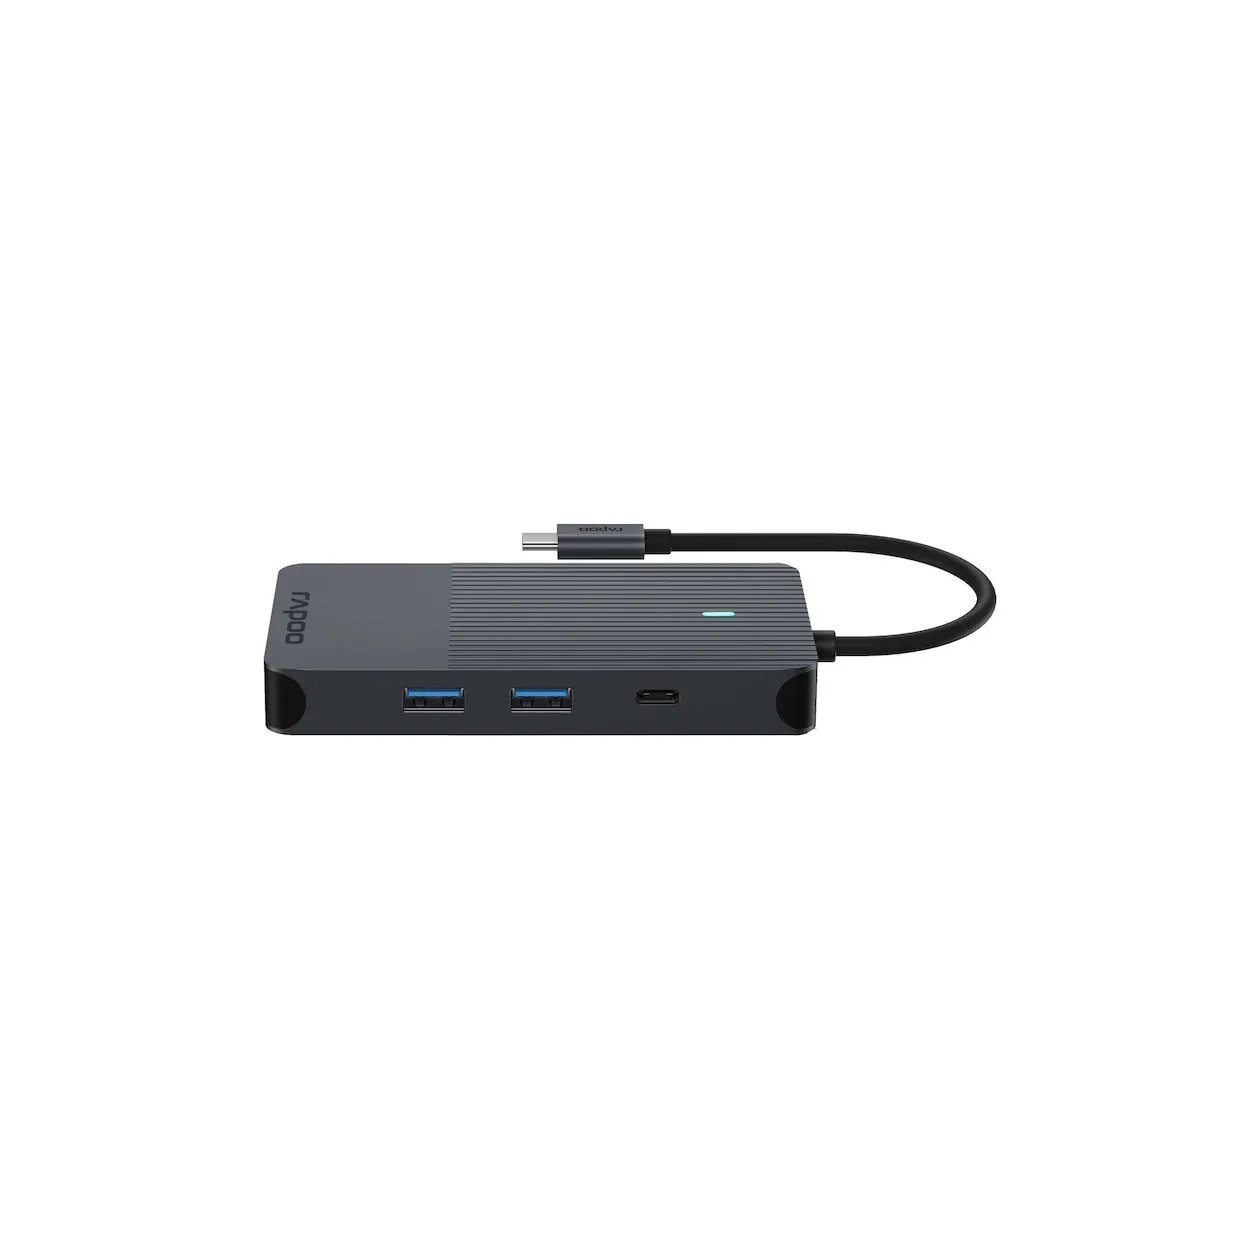 Rapoo USB-C Multiport Adapter, 10-in-1, grijs